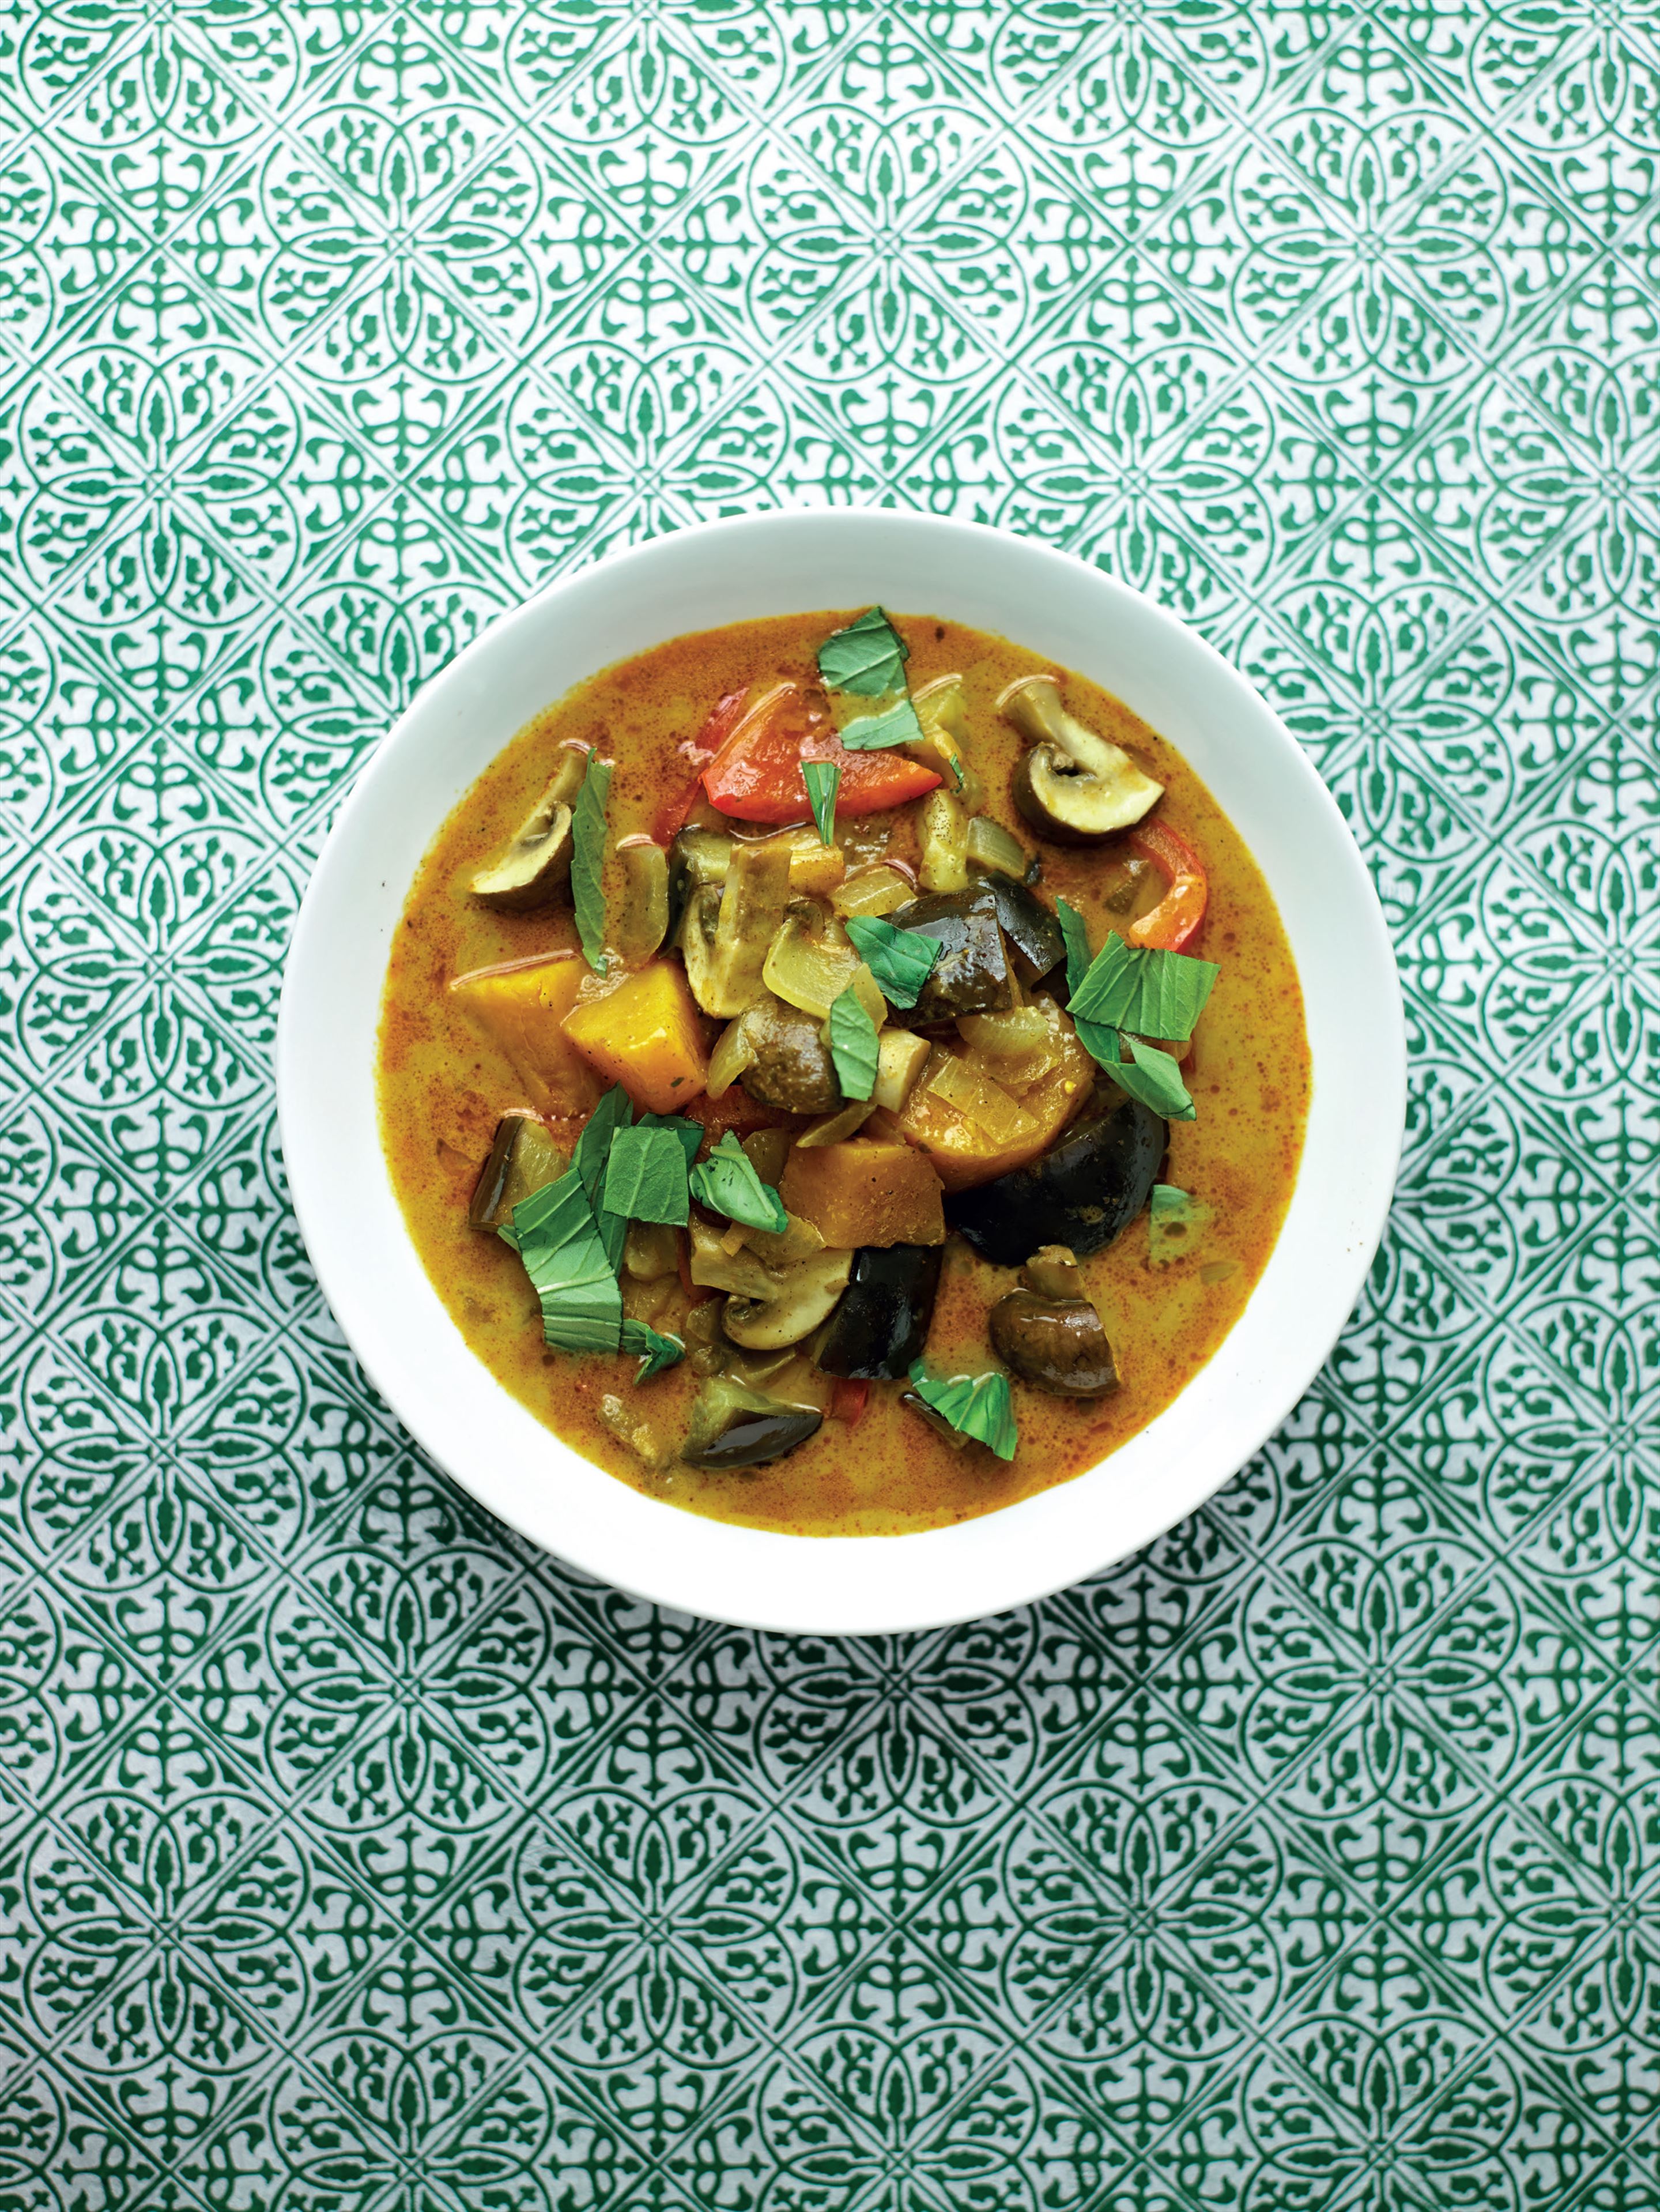 Massaman curry with sweet potato